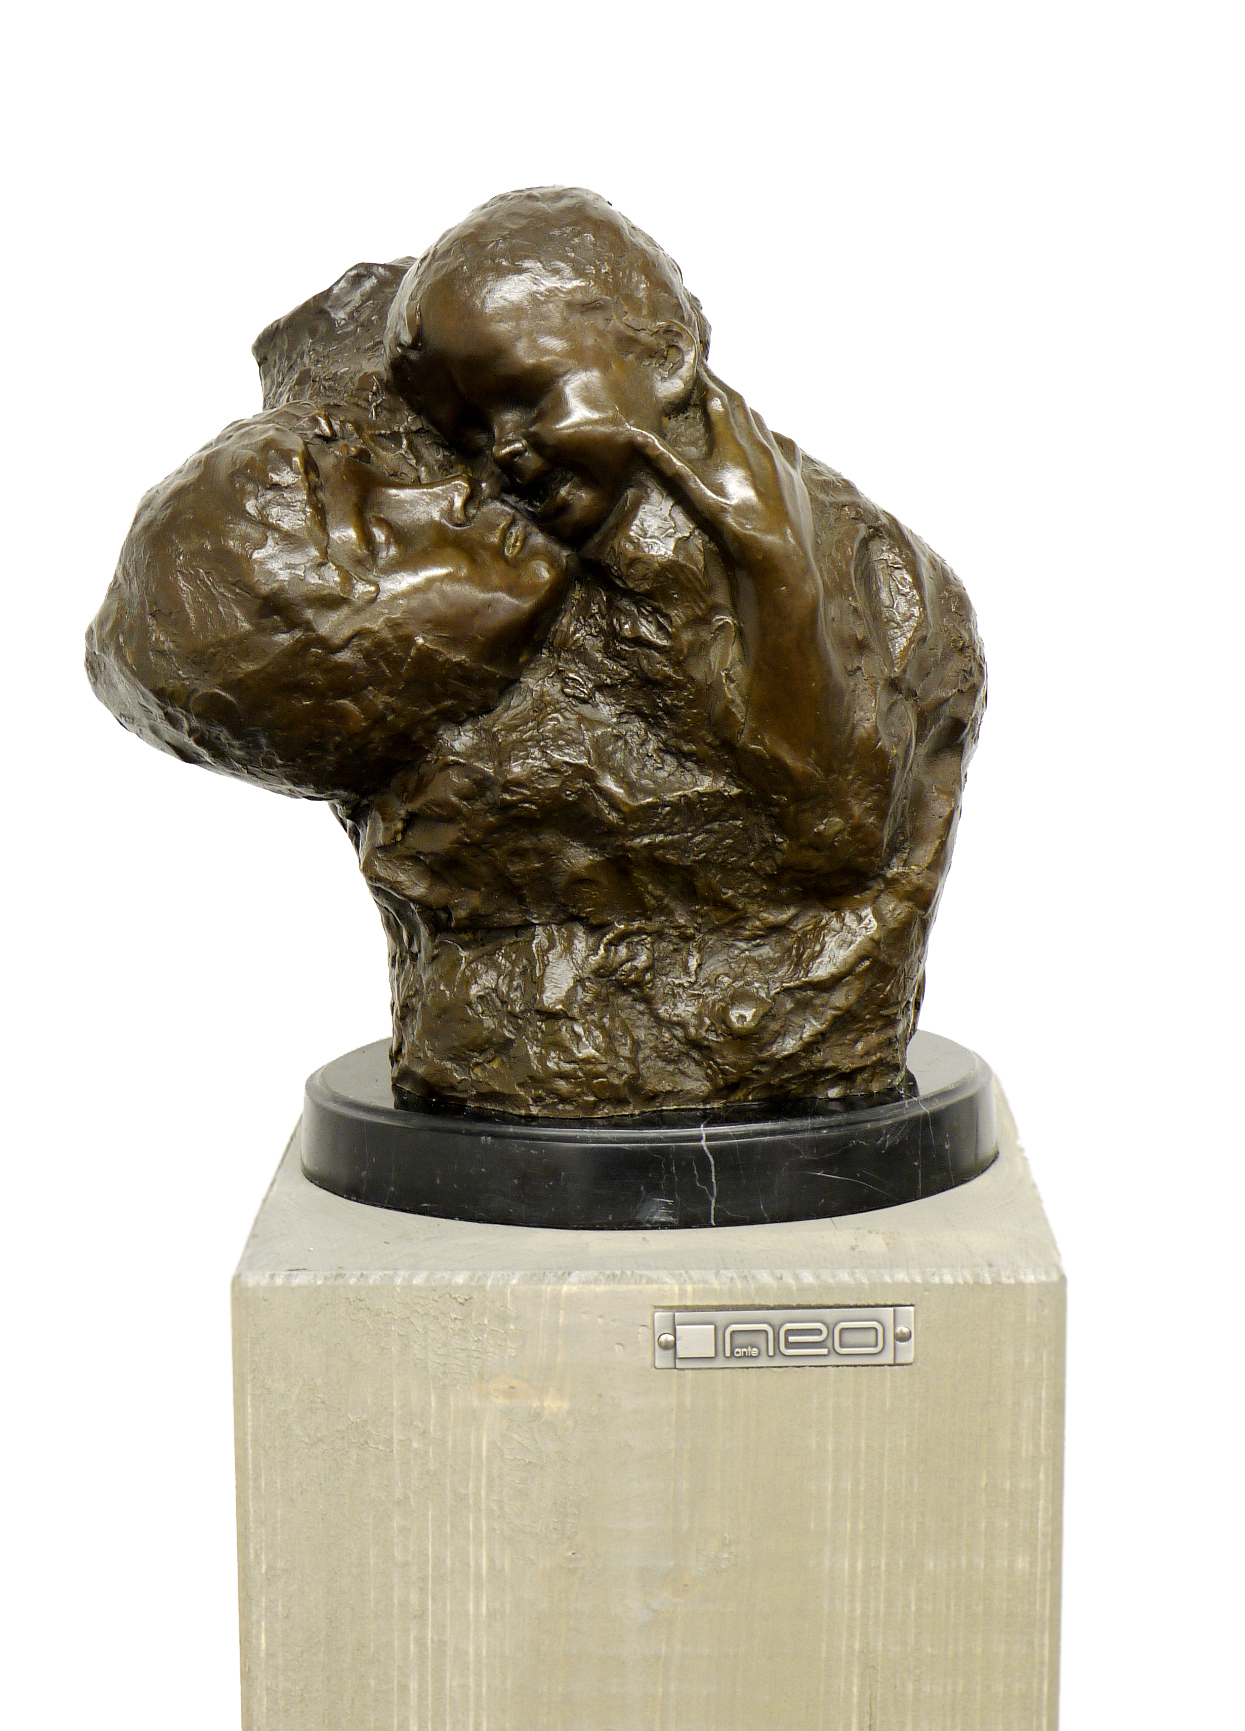 - Ernst Barlach Kunst & Ambiente Modern Bronze Sculpture 1928 The Singing Man